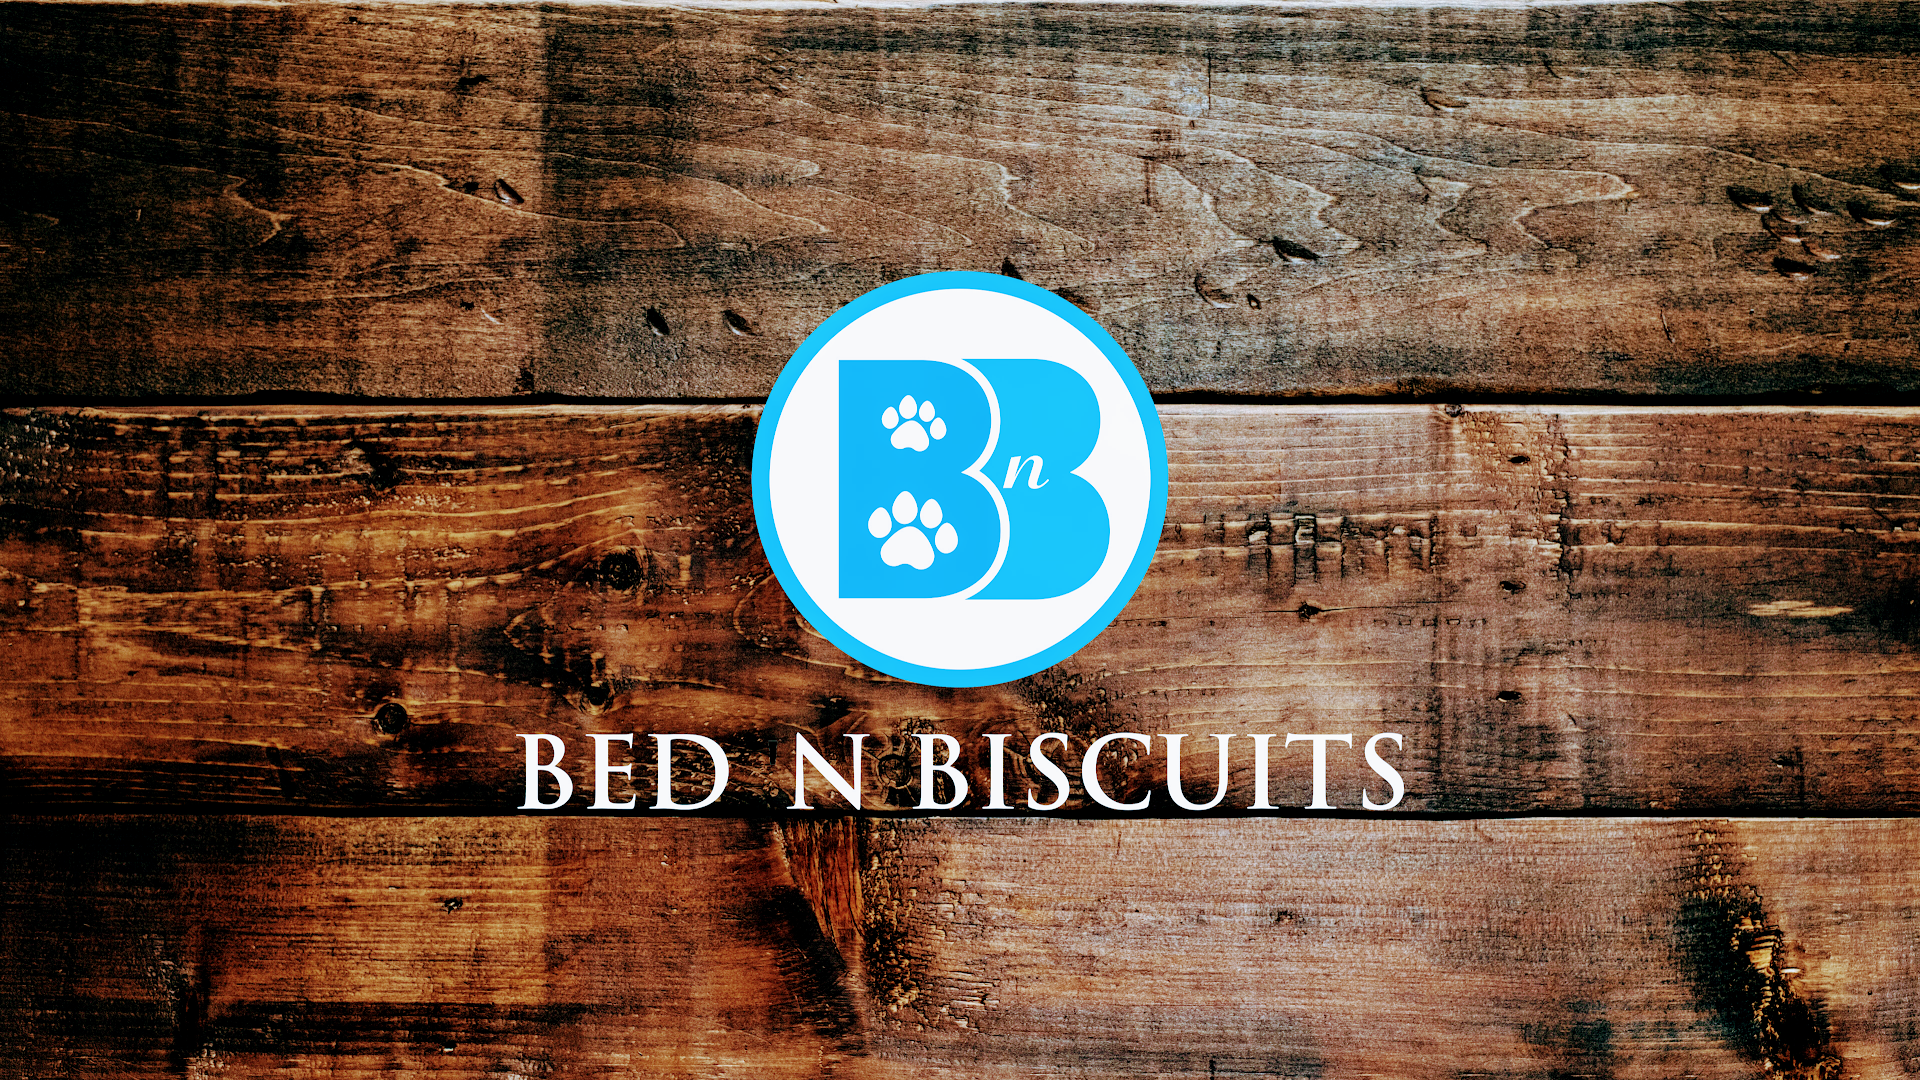 Circle B Bed 'n Biscuits